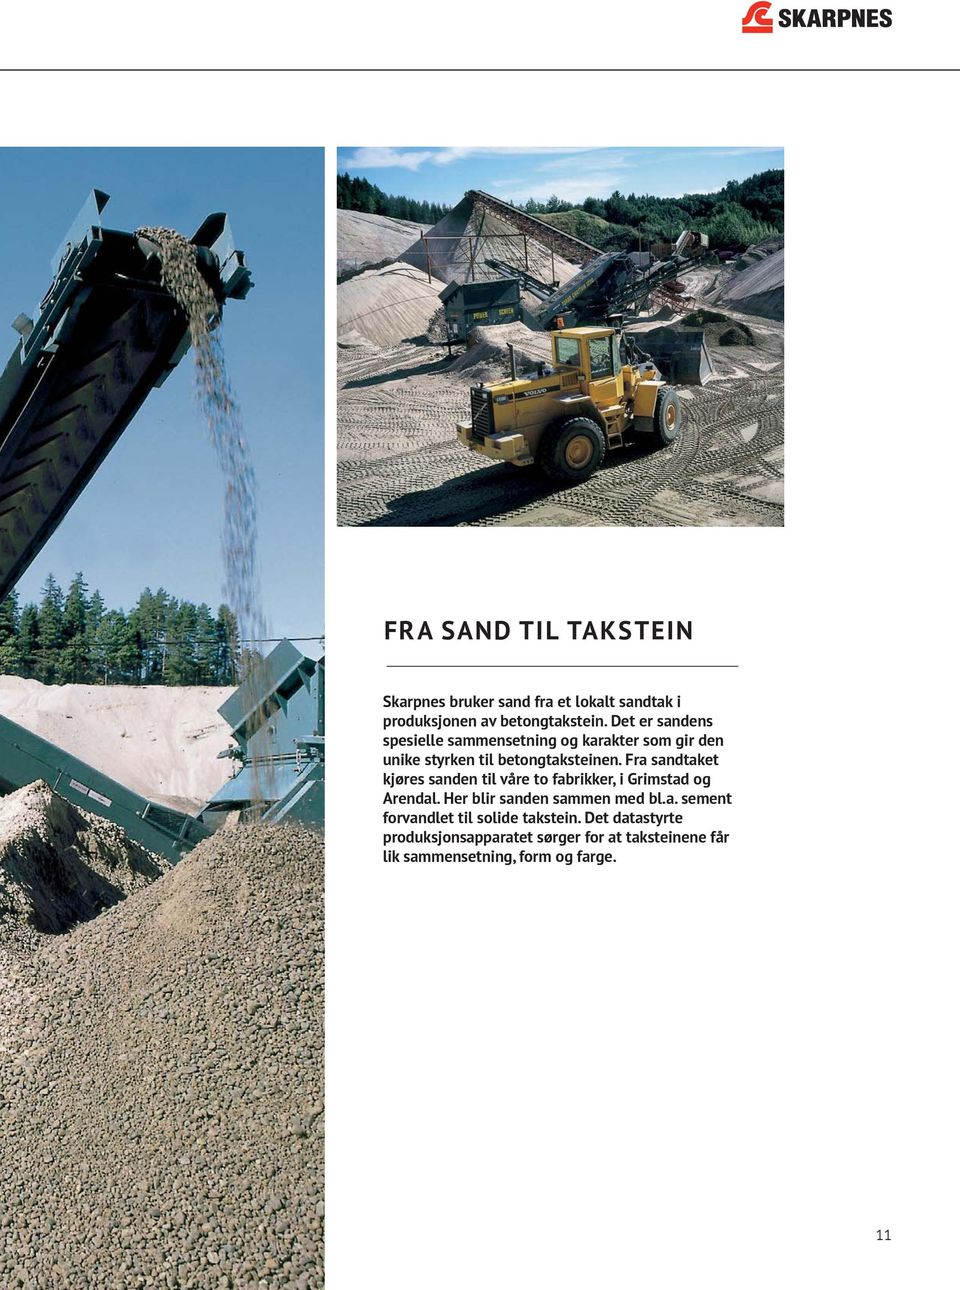 Fra sandtaket kjøres sanden til våre to fabrikker, i Grimstad og Arendal. Her blir sanden sammen med bl.a. sement forvandlet til solide takstein.